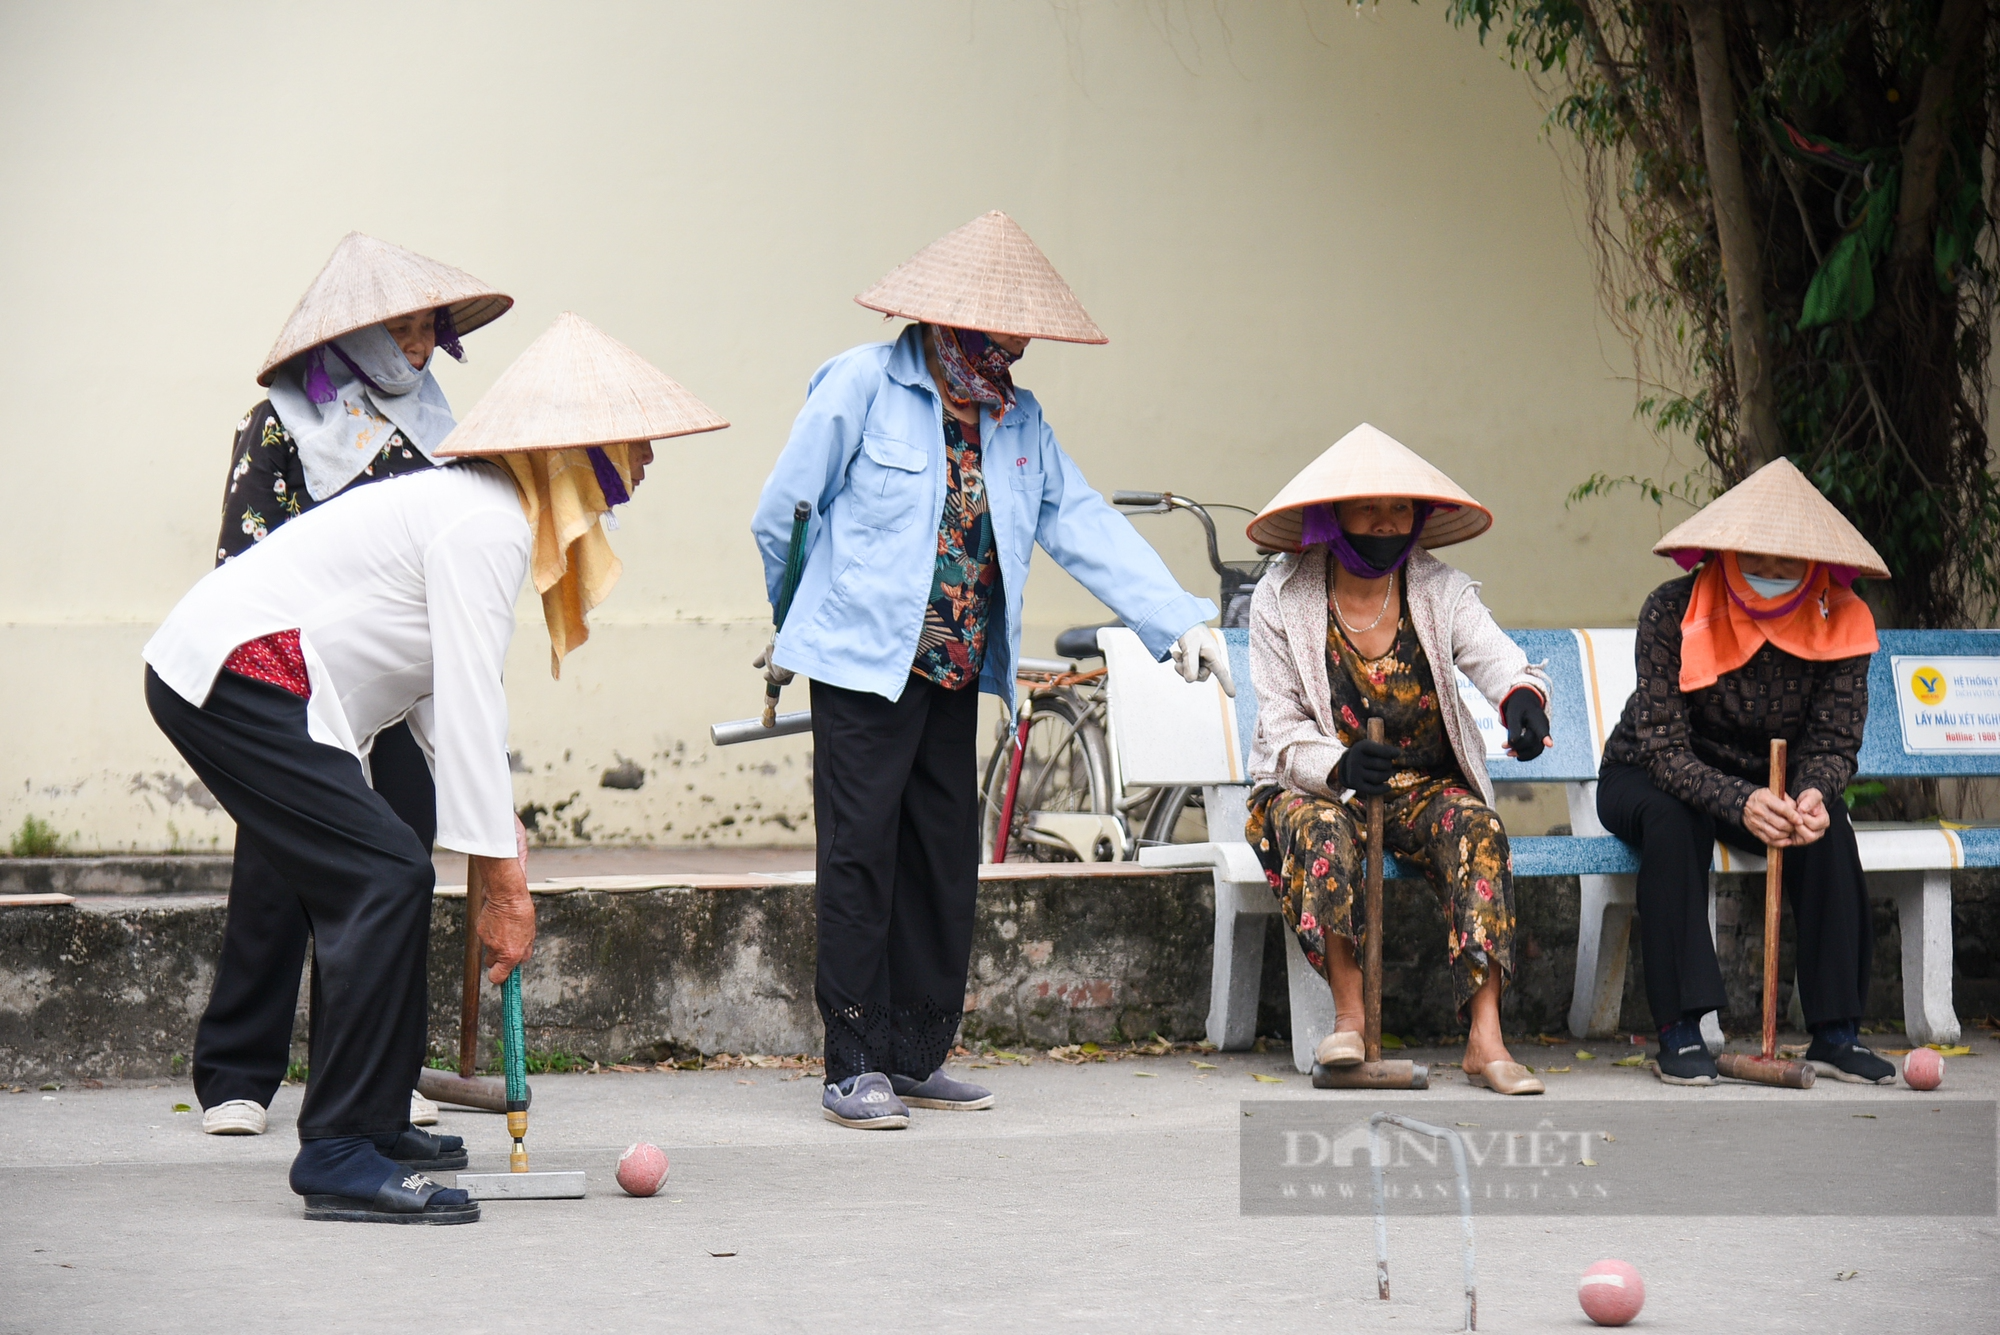 Người dân ngoại thành Hà Nội say mê vung gậy chơi môn thể thao quý tộc châu Âu - Ảnh 2.